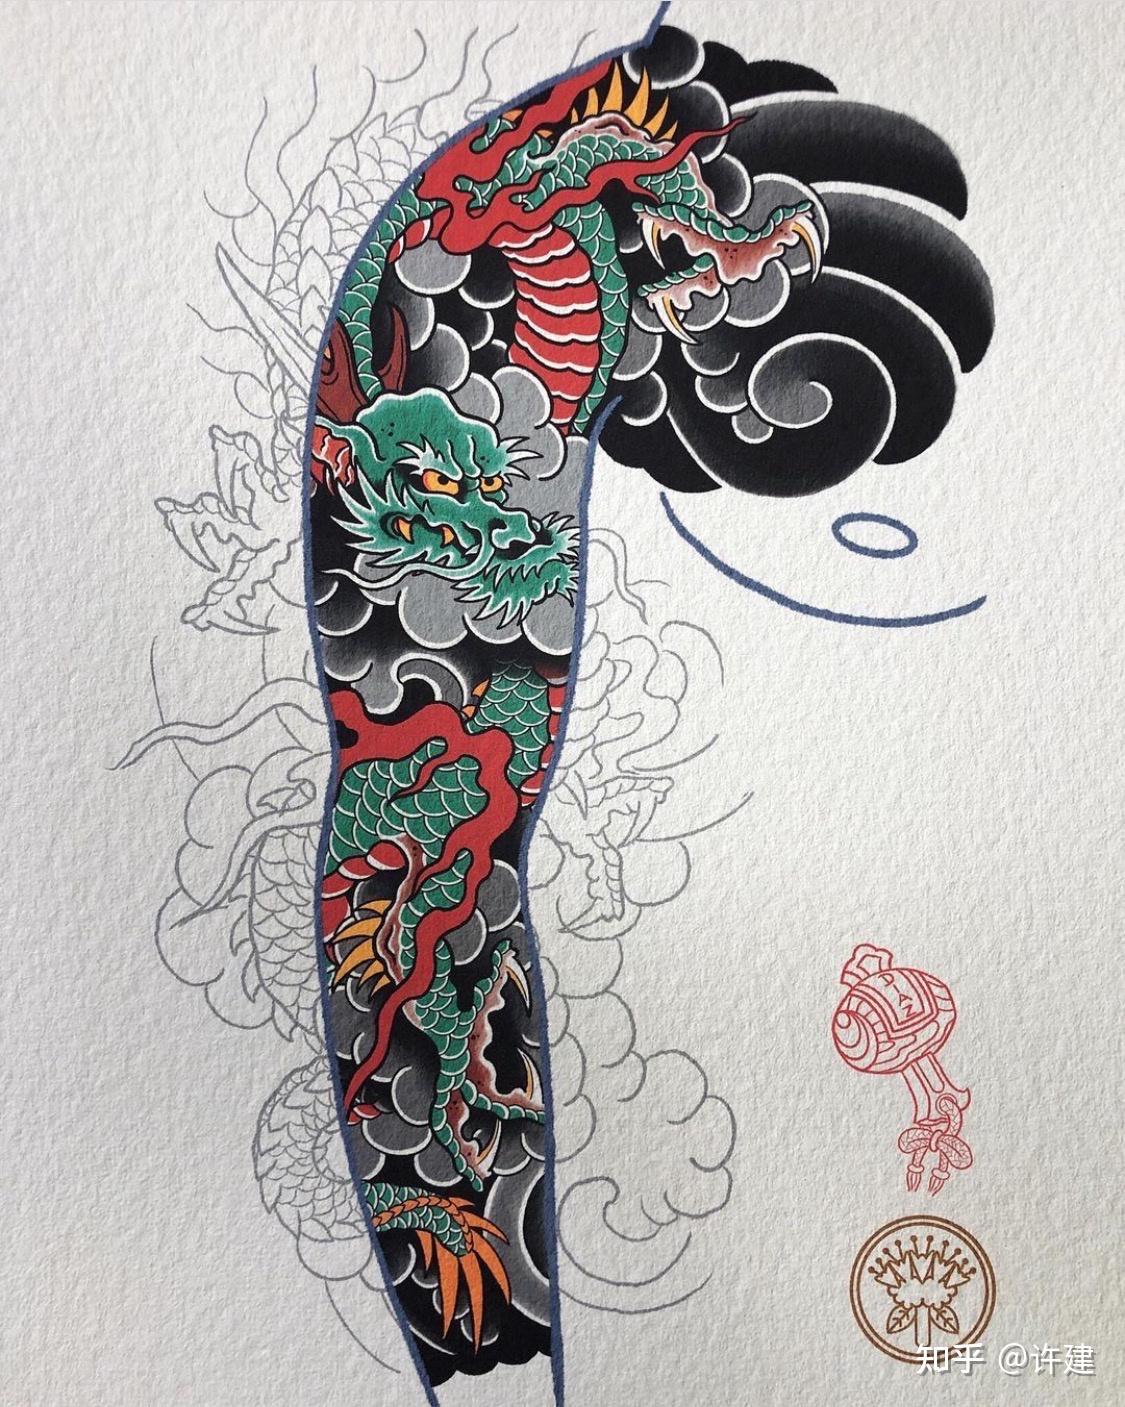 麒麟花臂纹身绘制中_大图_上海由龙刺青